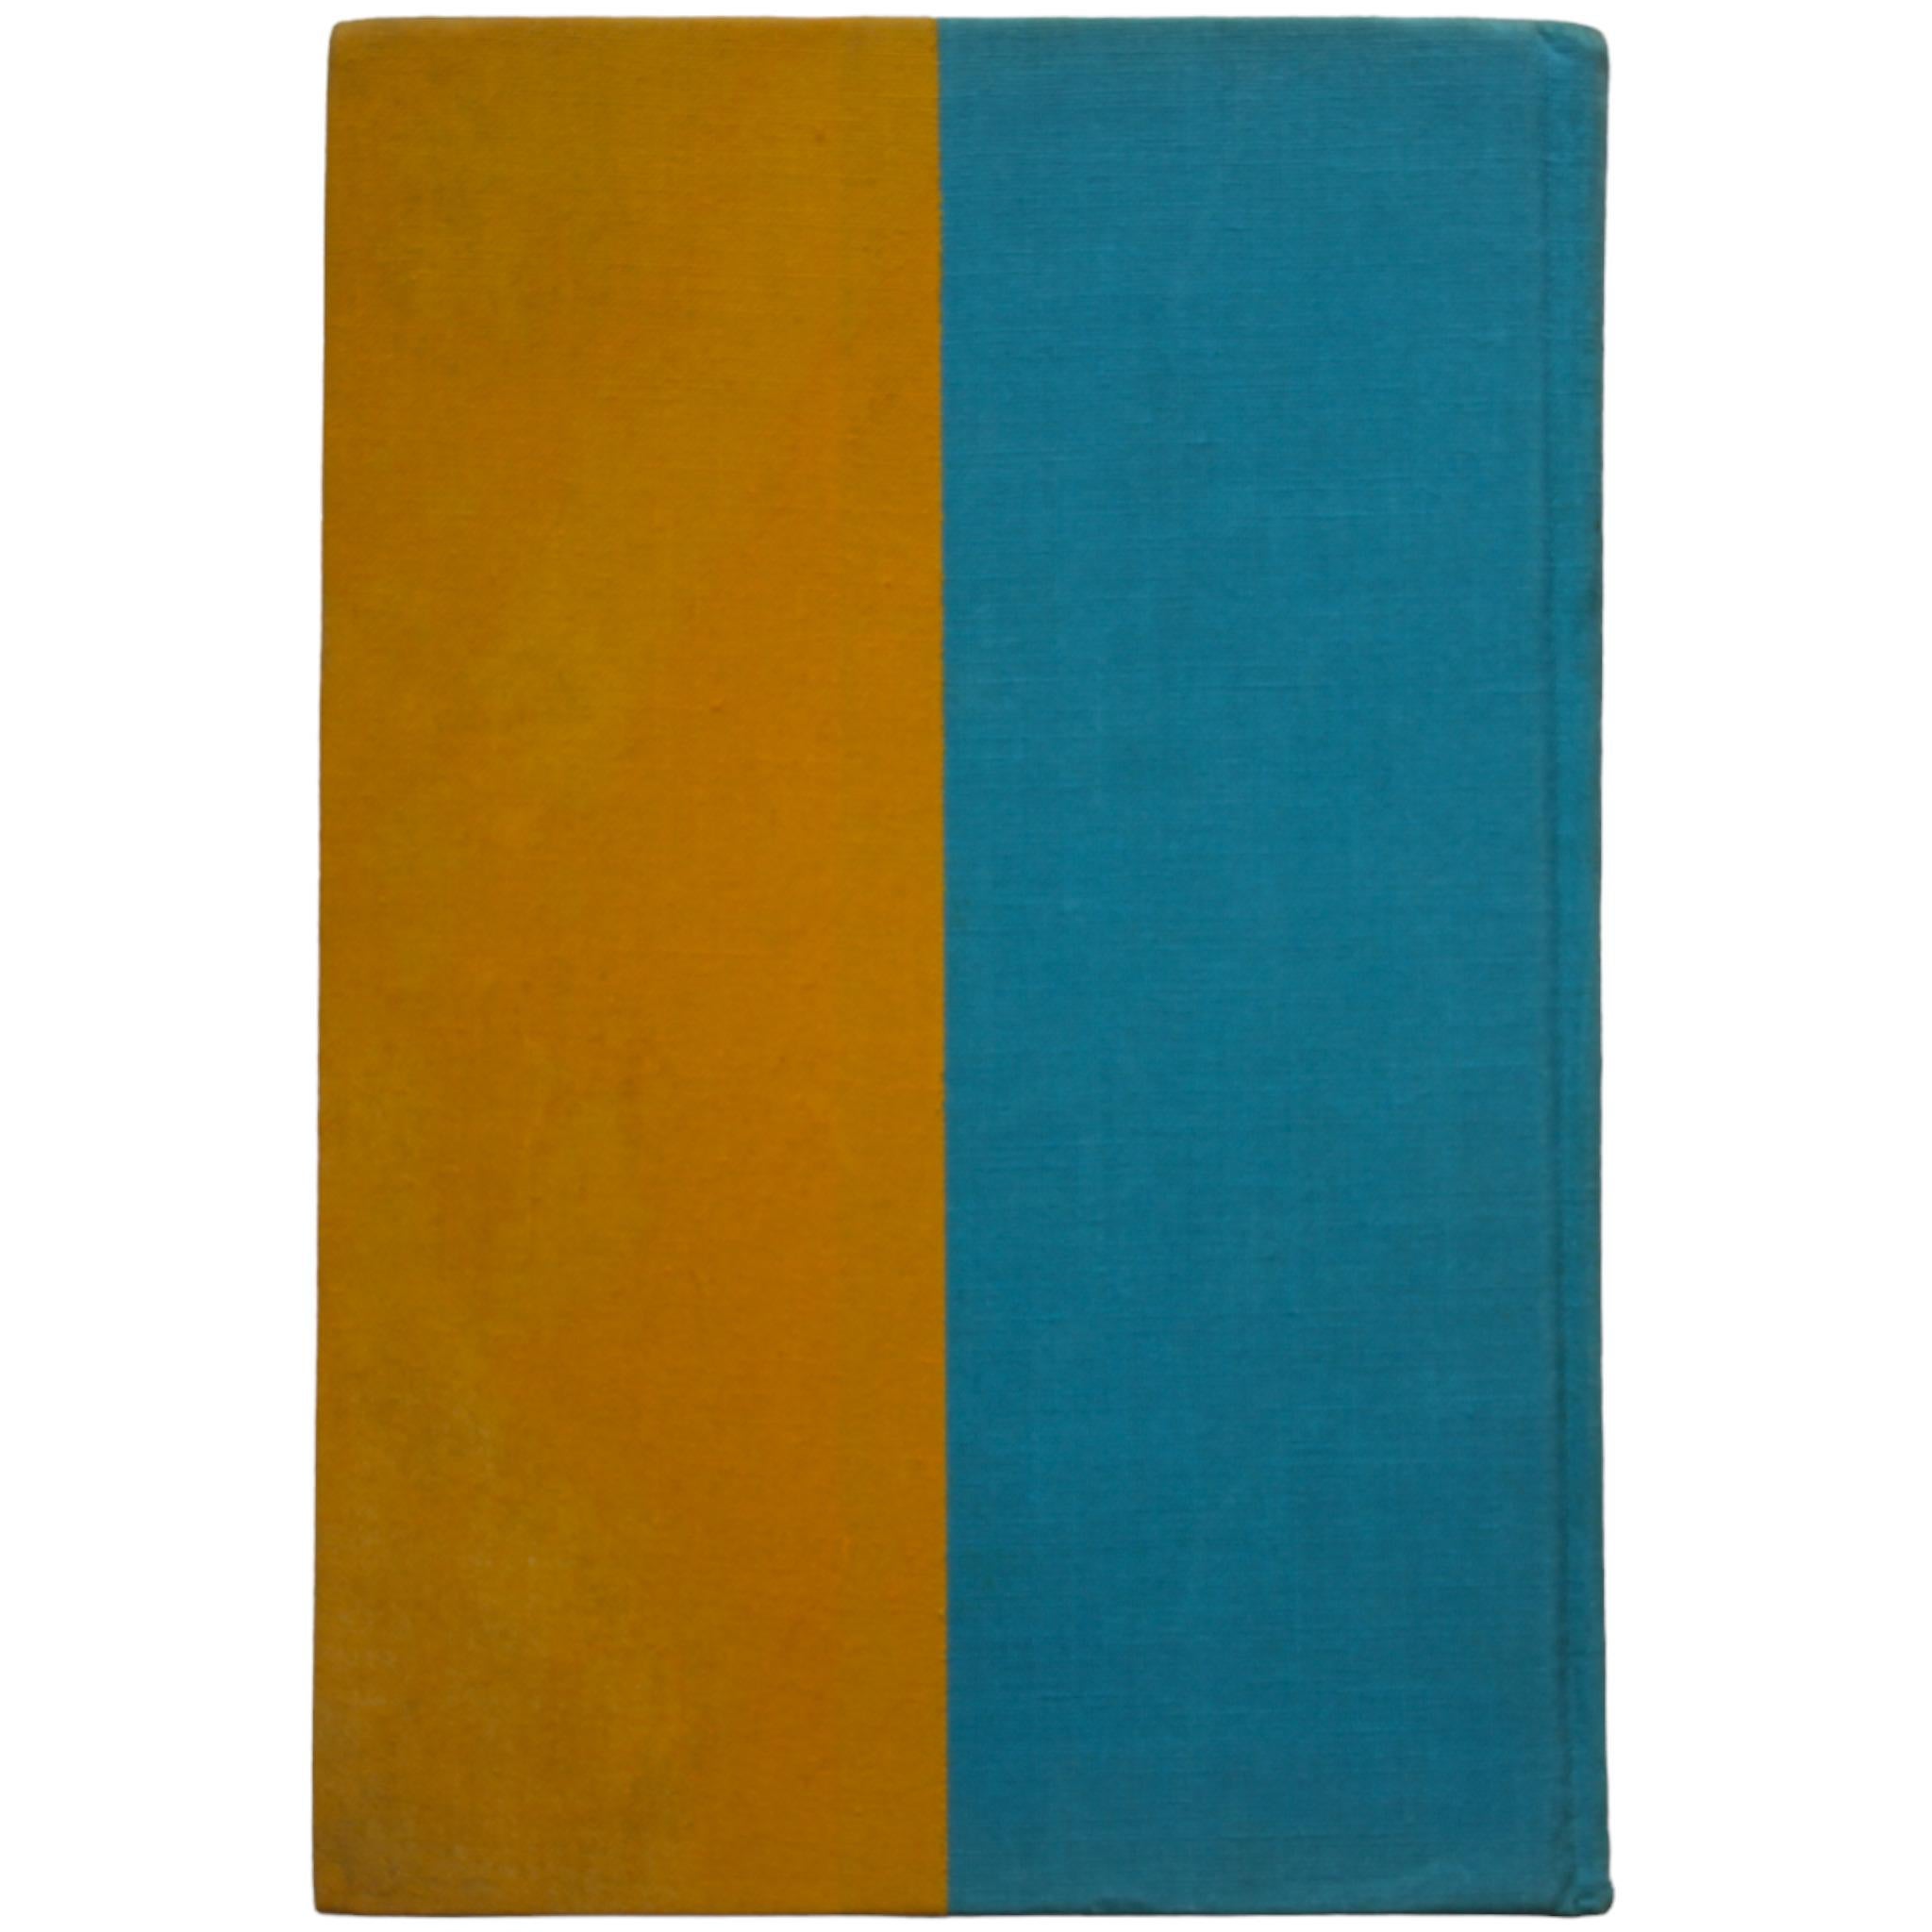 Vom Bauhaus zu unserem Haus, Tom Wolfe

Farrar Straus Giroux, New York, 1981

Hardcover

14cm x 20.5cm

Guter Zustand